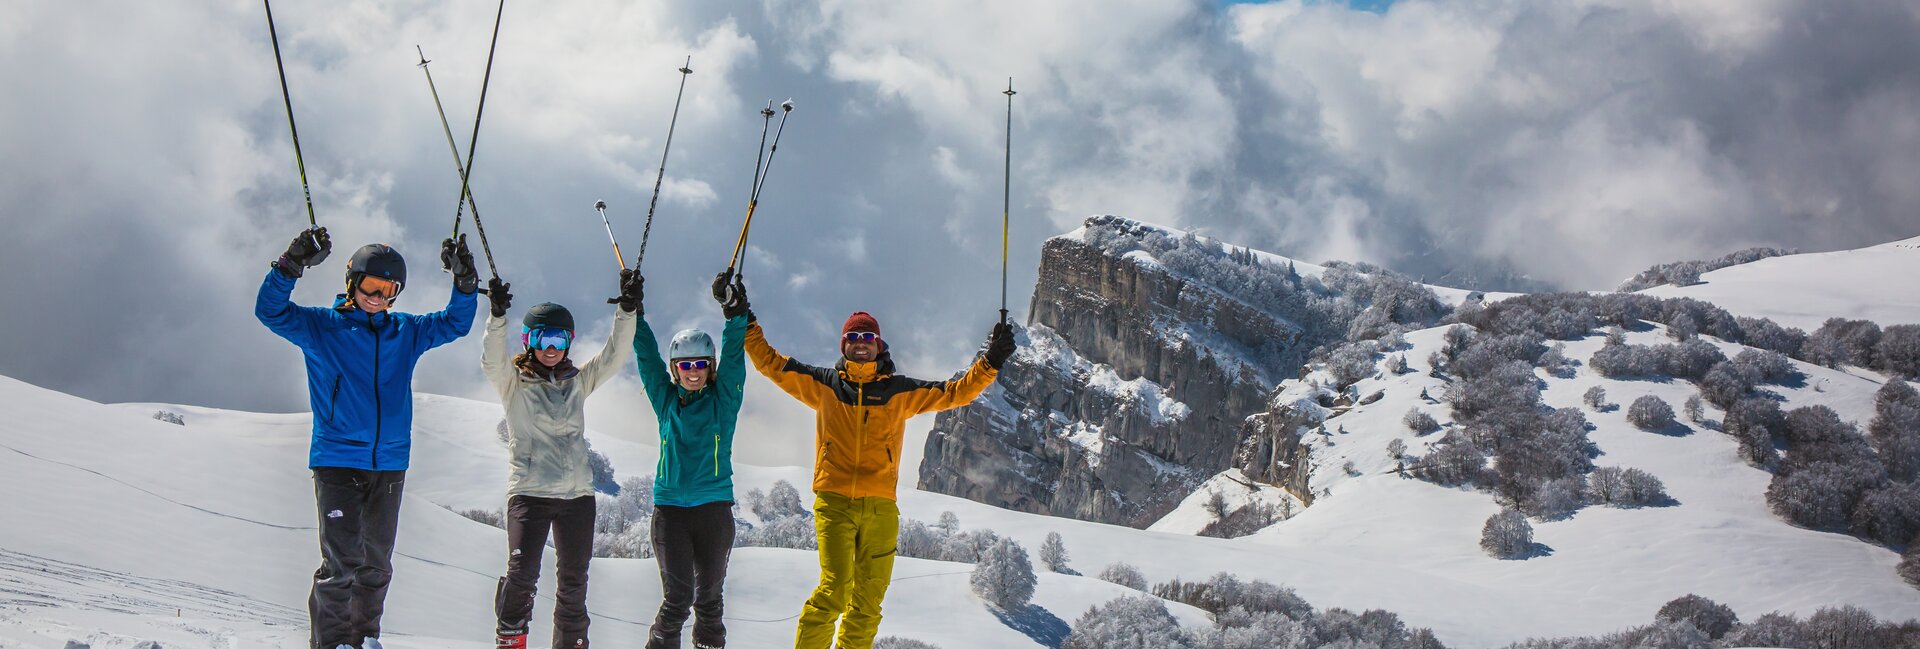 Het skigebied Polsa-San Valentino-San Giacomo